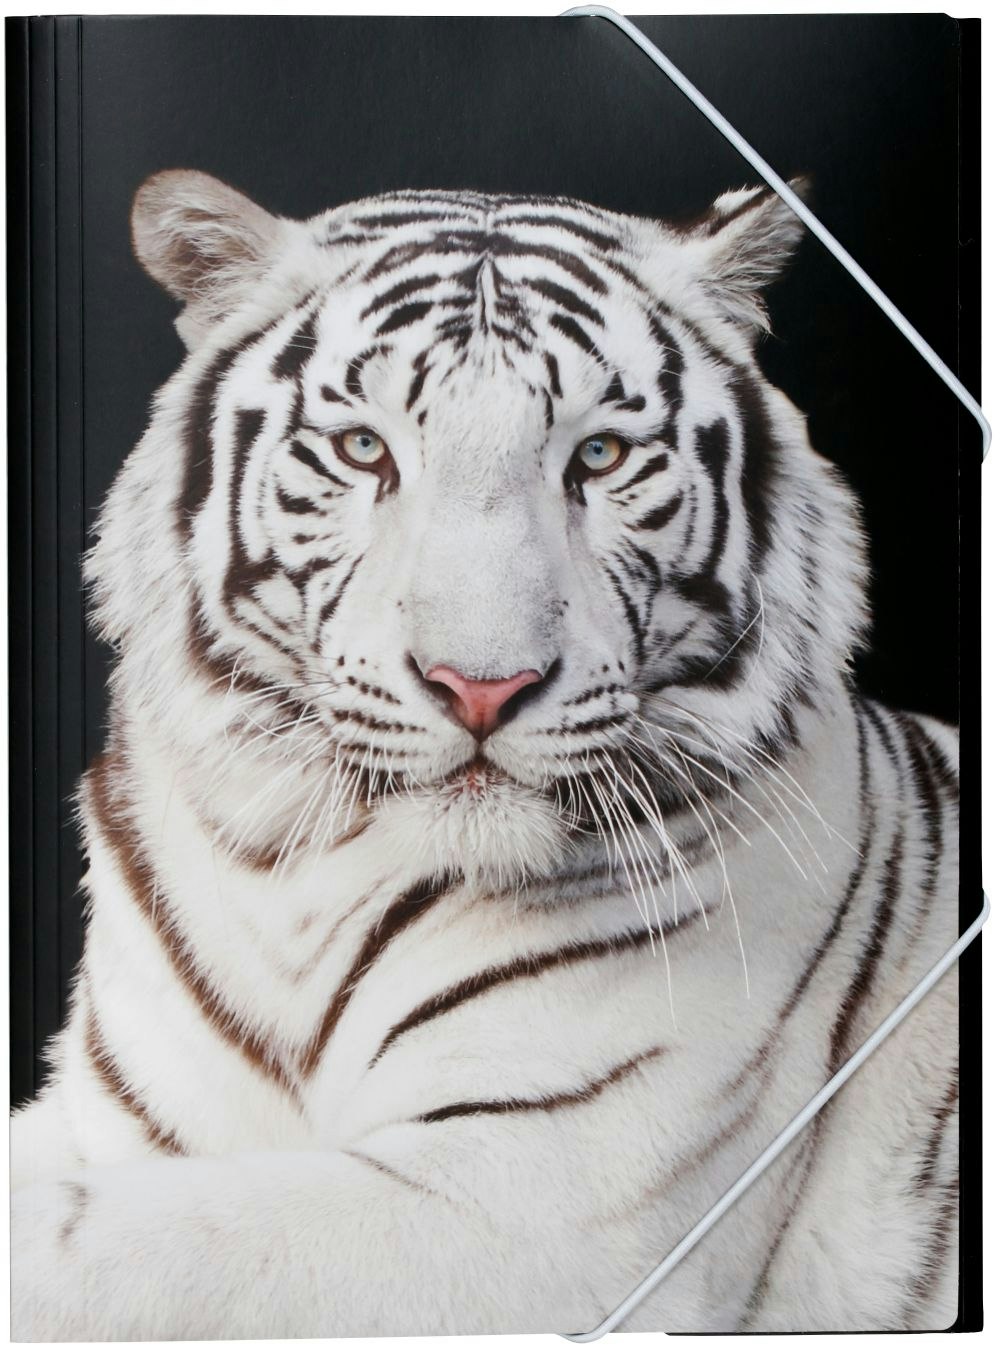 Tiger en gummibandsmapp i A4 storlek med en tiger i svart och vitt, från Hedlundgruppen, mappen är FSC godkänd.